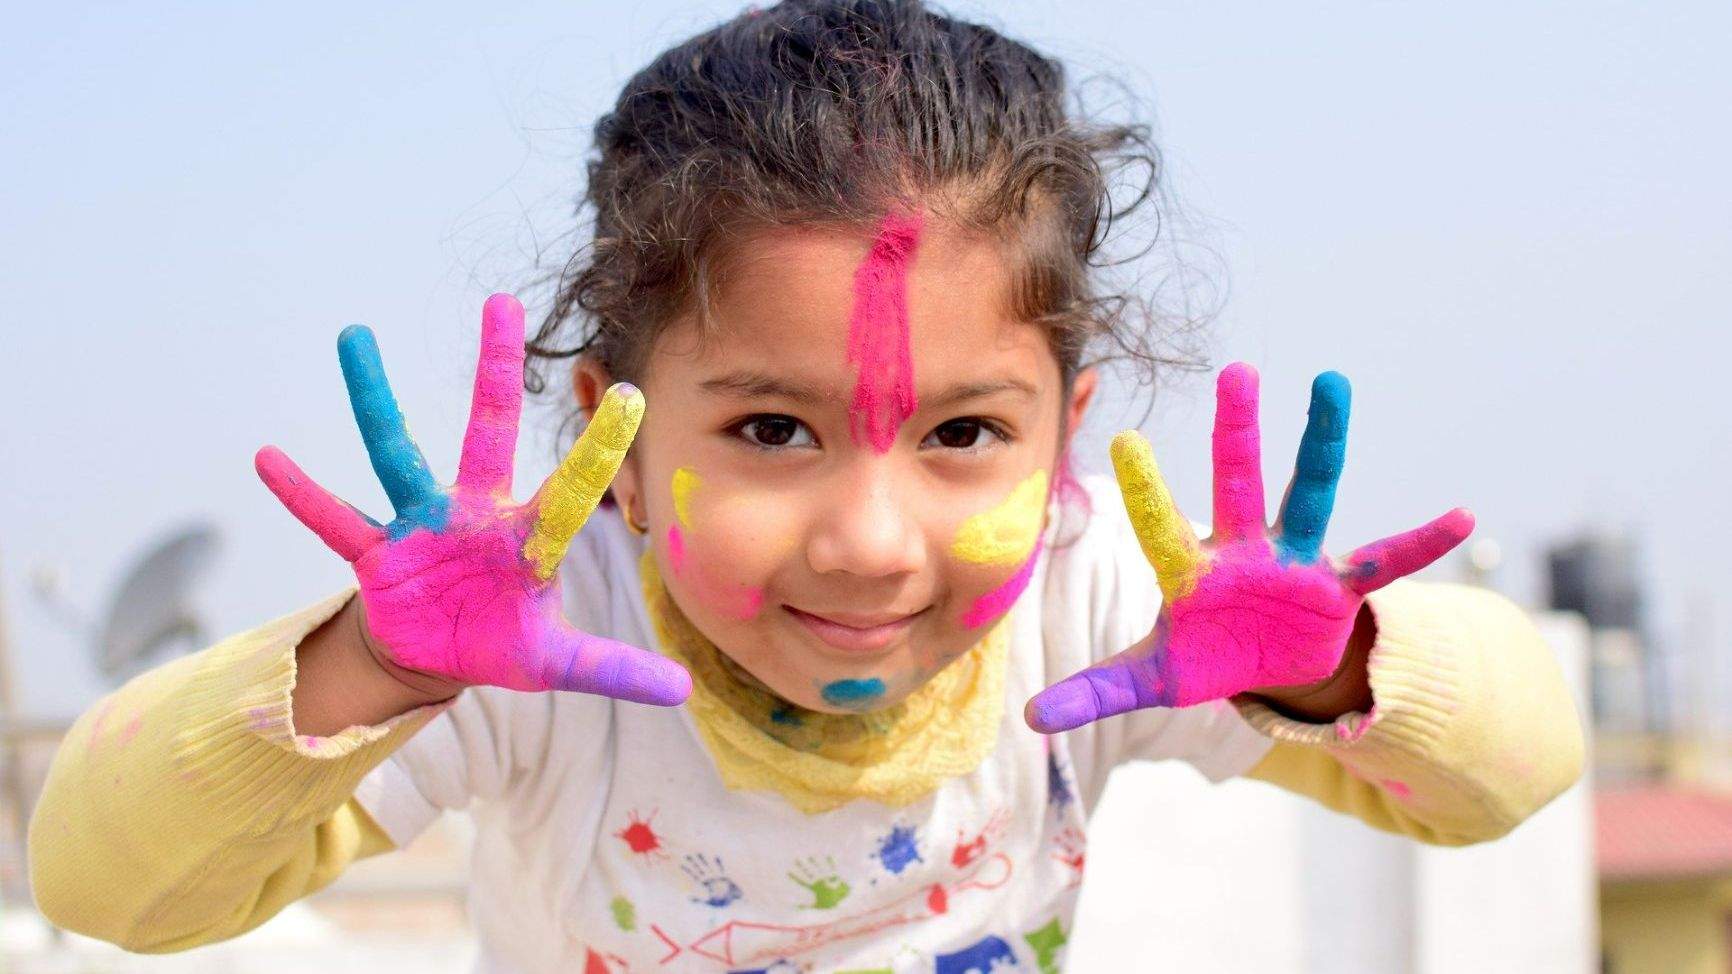 Kind mit farbigen Händenn und Gesicht